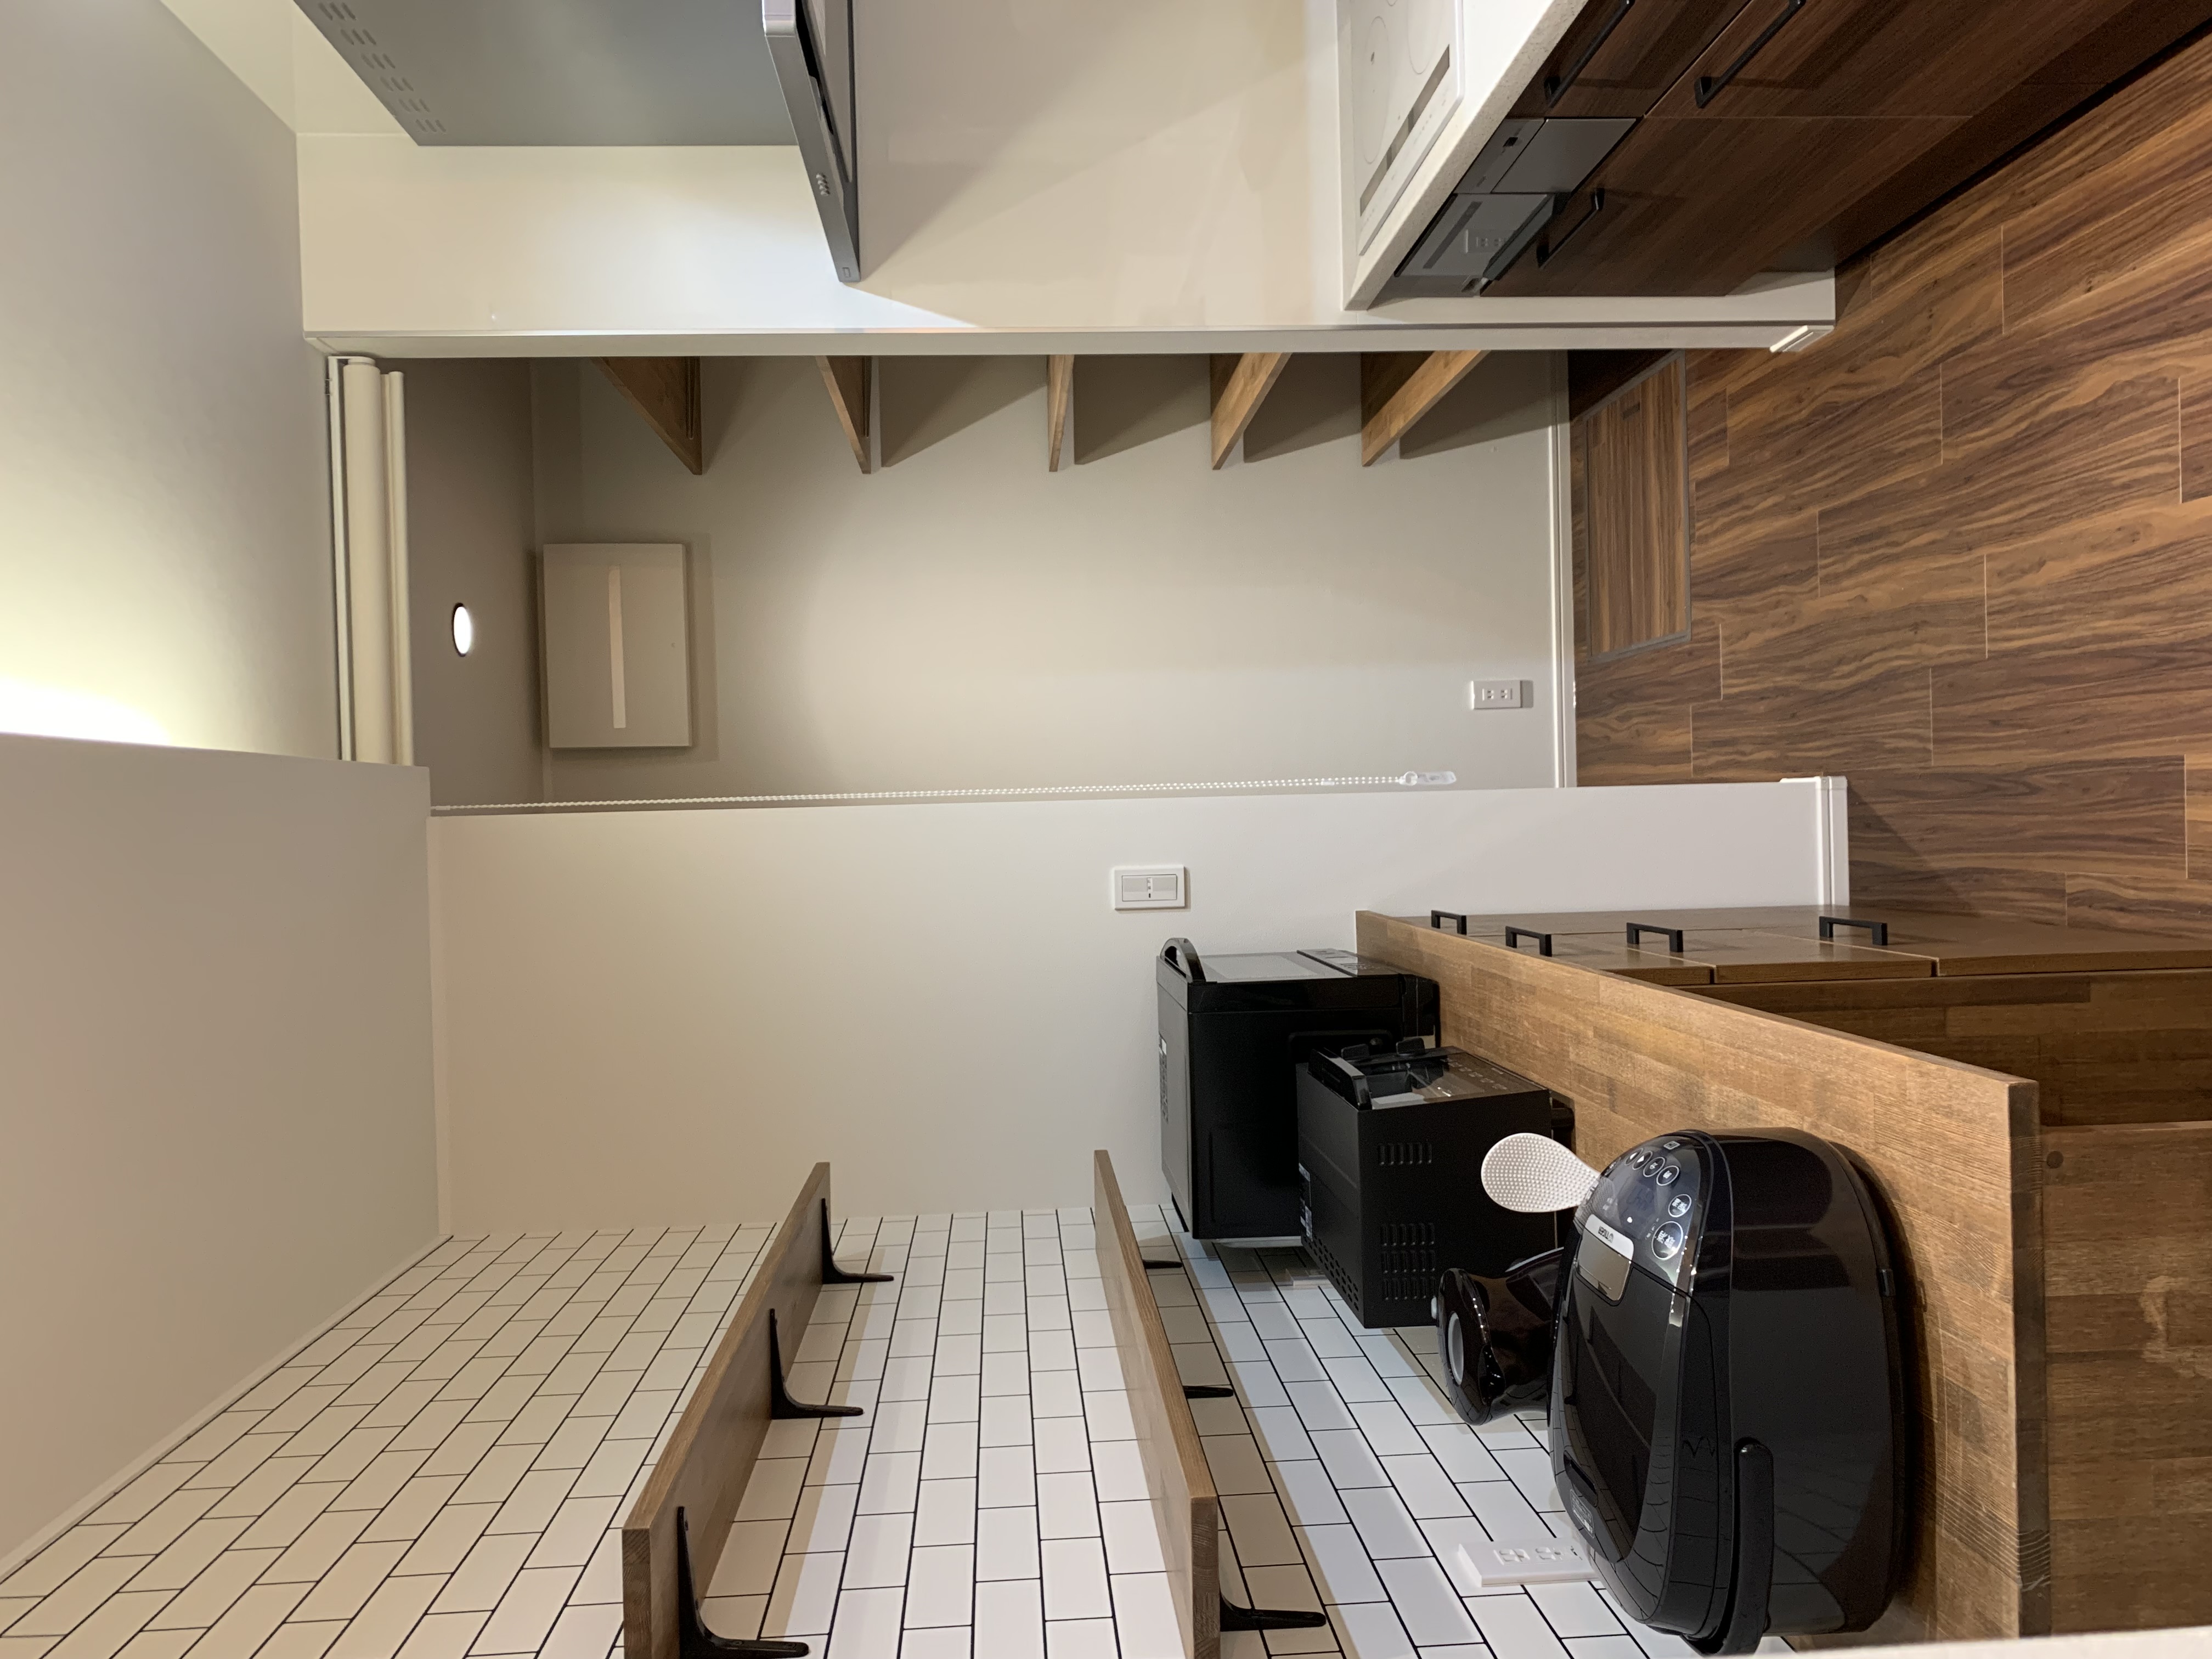 キッチン奥のパントリーは、両側に可動棚を造作。